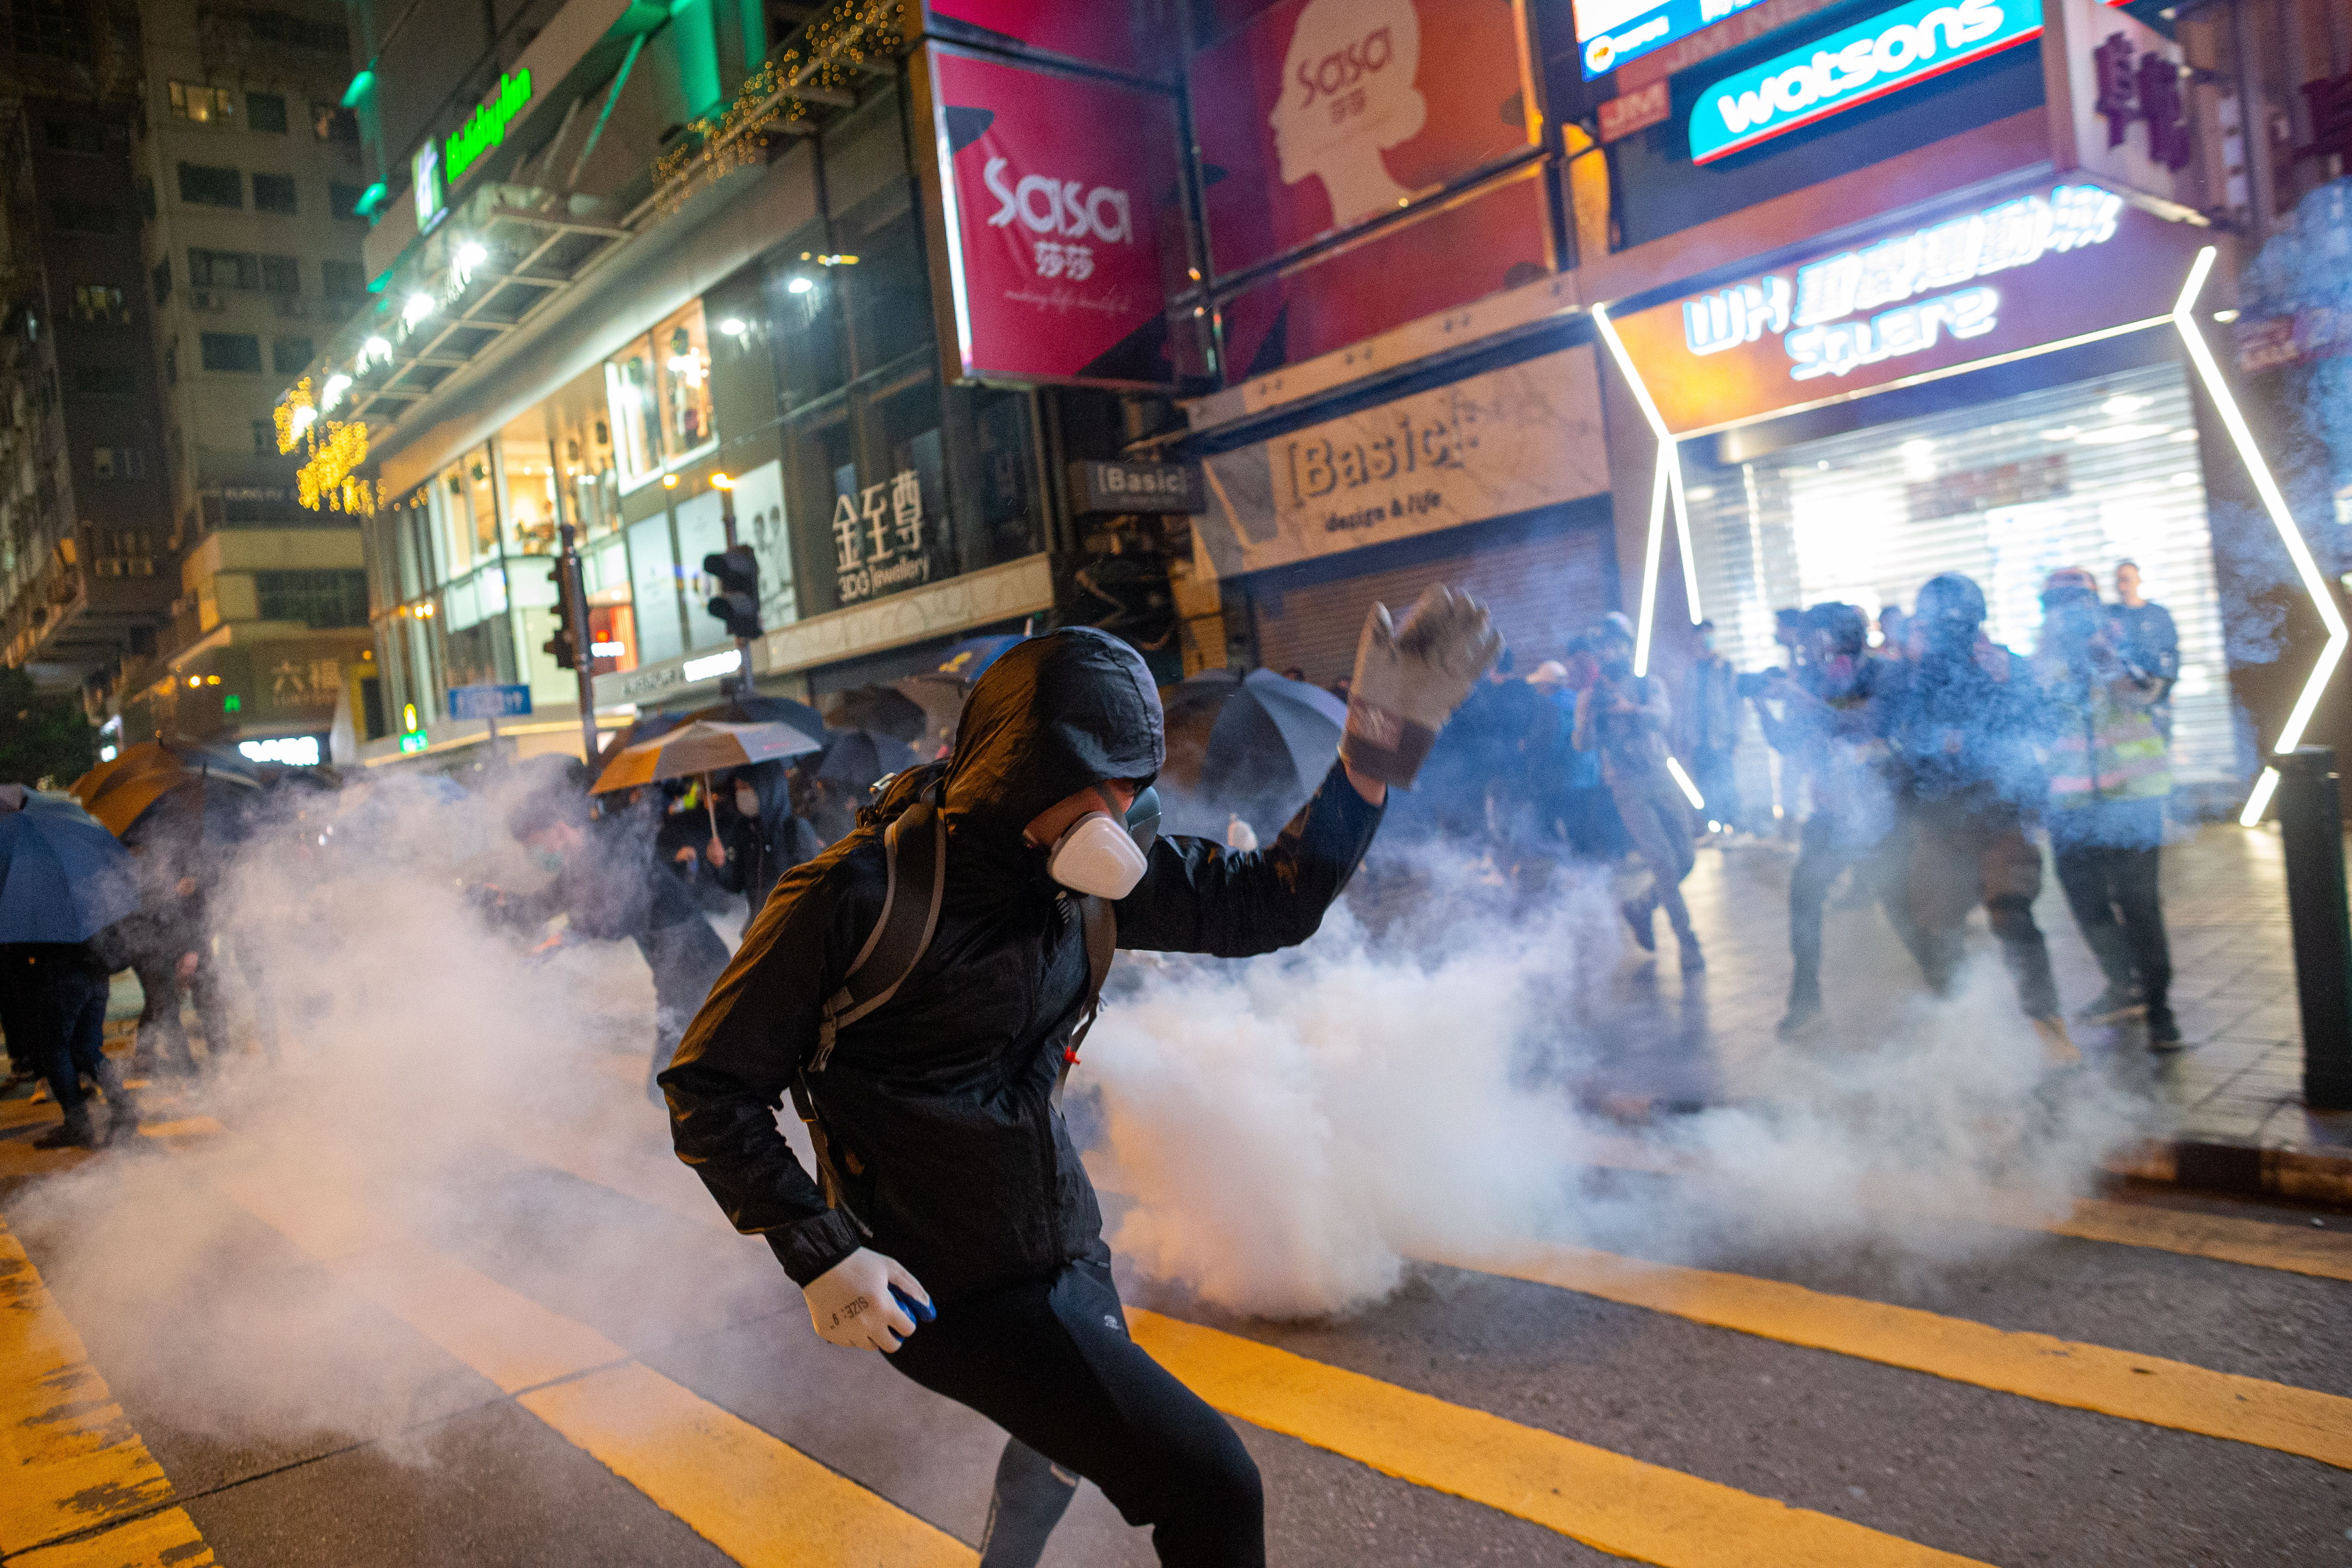 Múltiples enfrentamientos entre protestantes y la policía de Hong Kong se reportaron en Navidad. (Foto Prensa Libre: EFE)